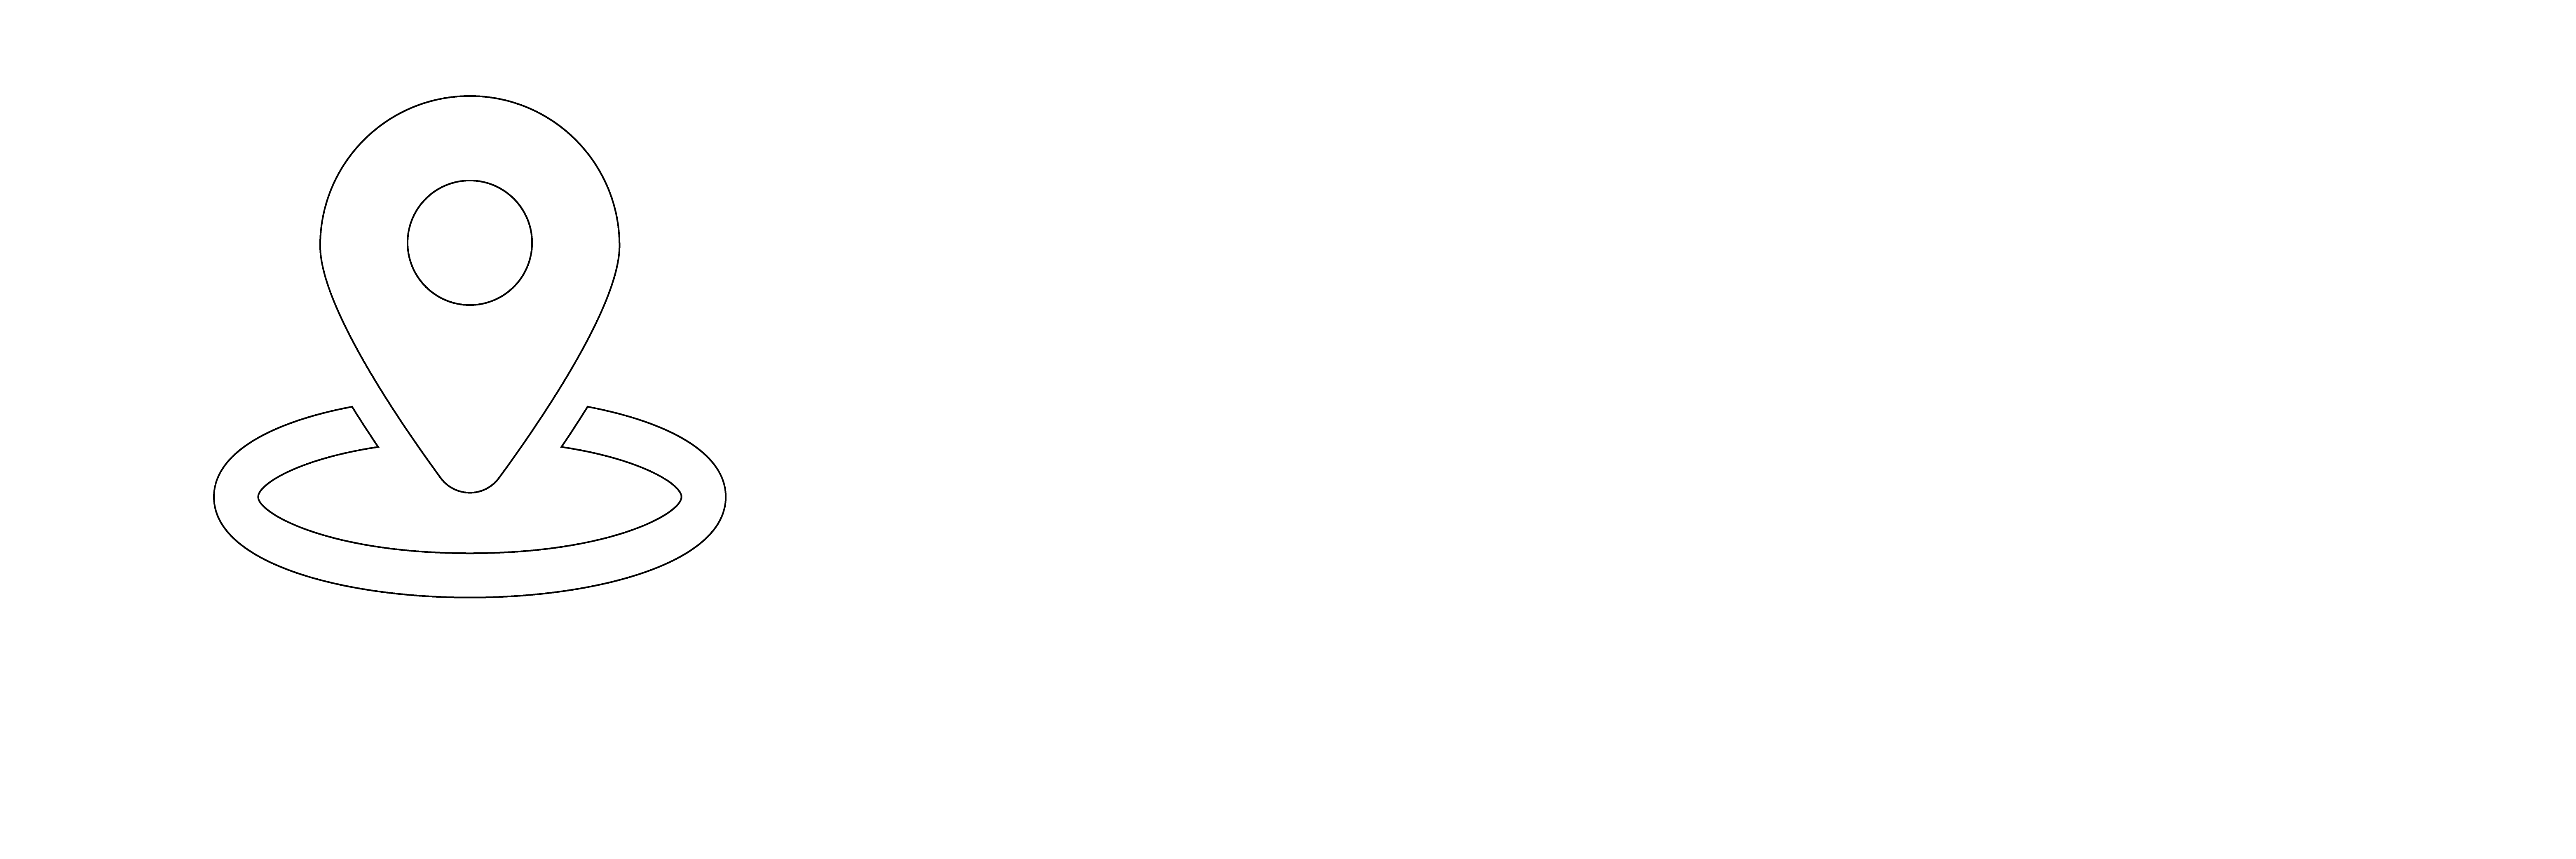 Transpoco Telematics Logo